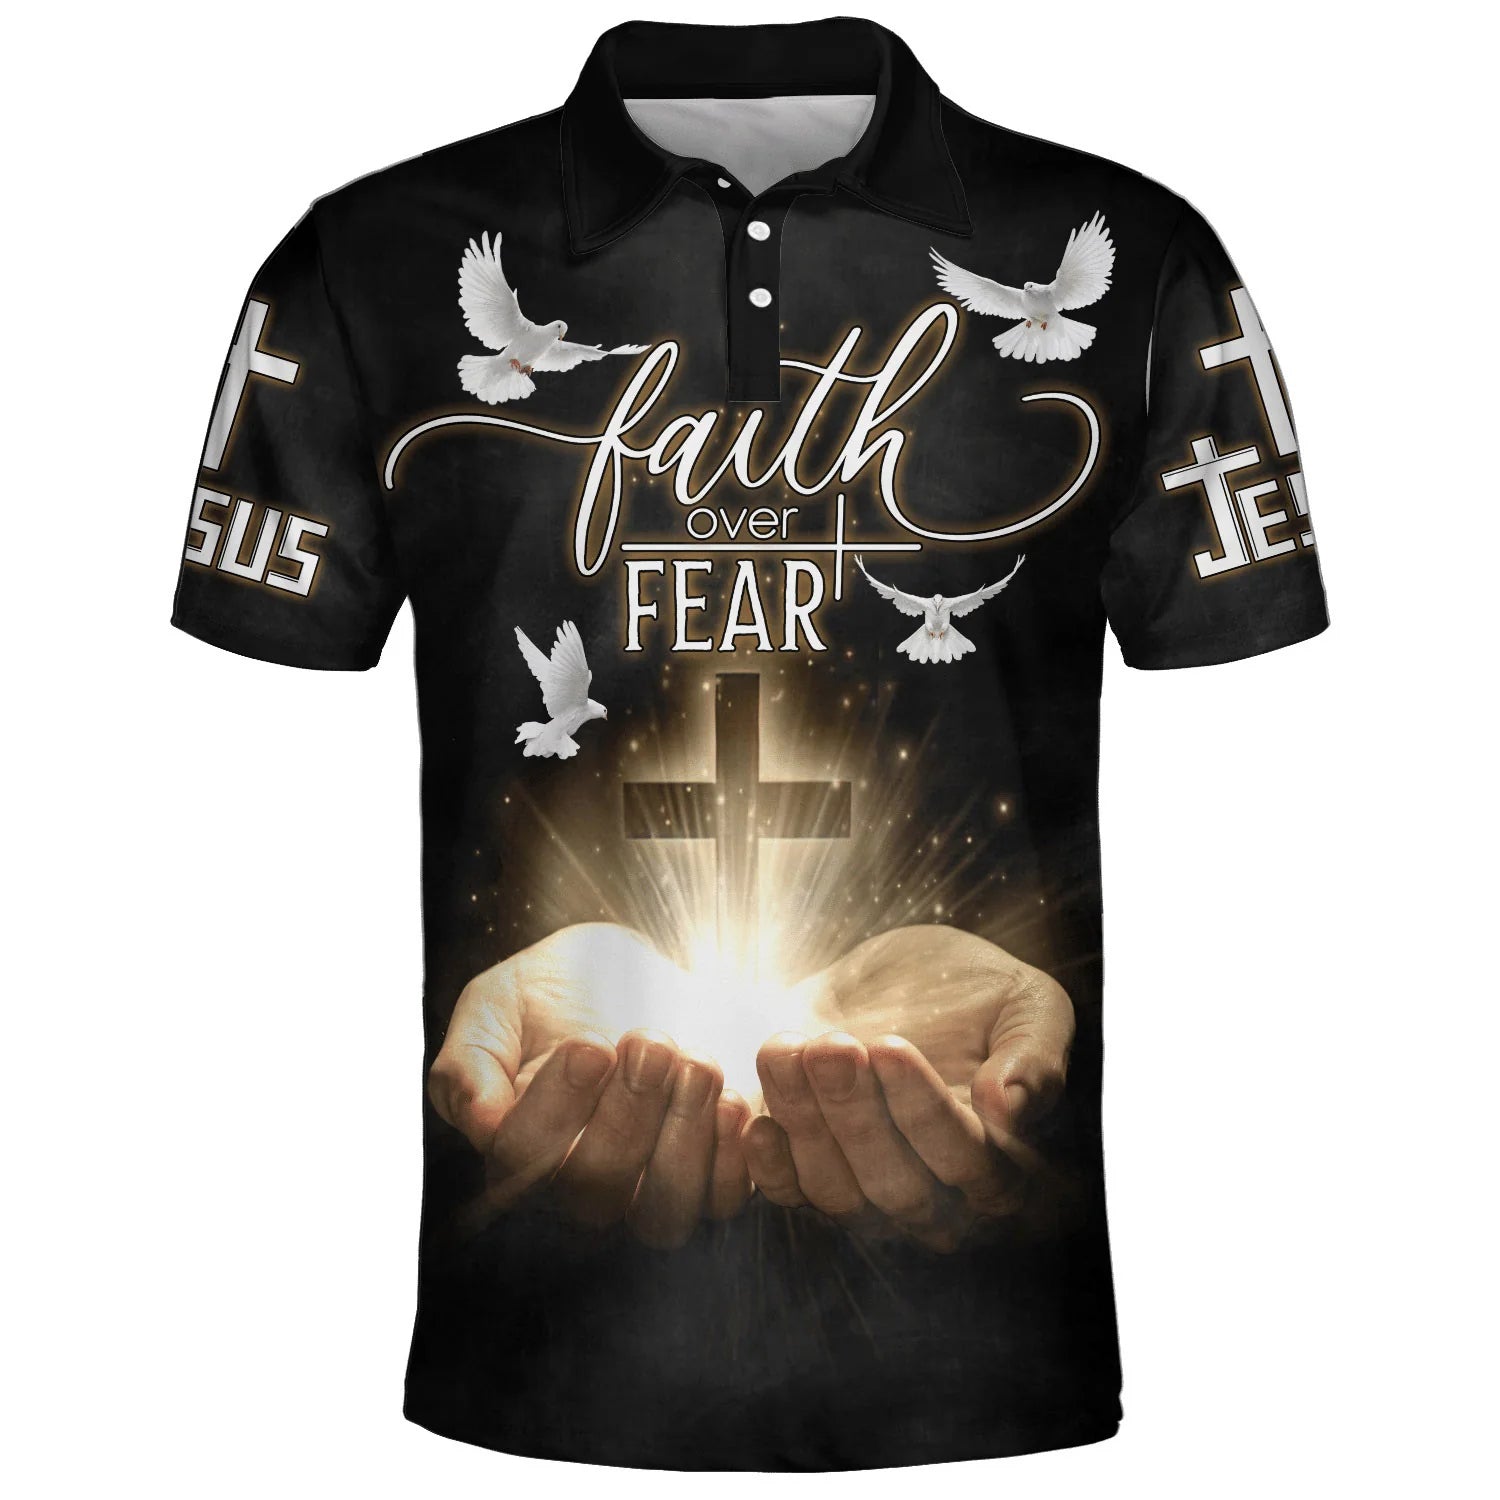 Christianartbag Polo Shirt, Faith Over Fear Cross Dove Polo Shirt, Christian Shirts & Shorts. - Christian Art Bag